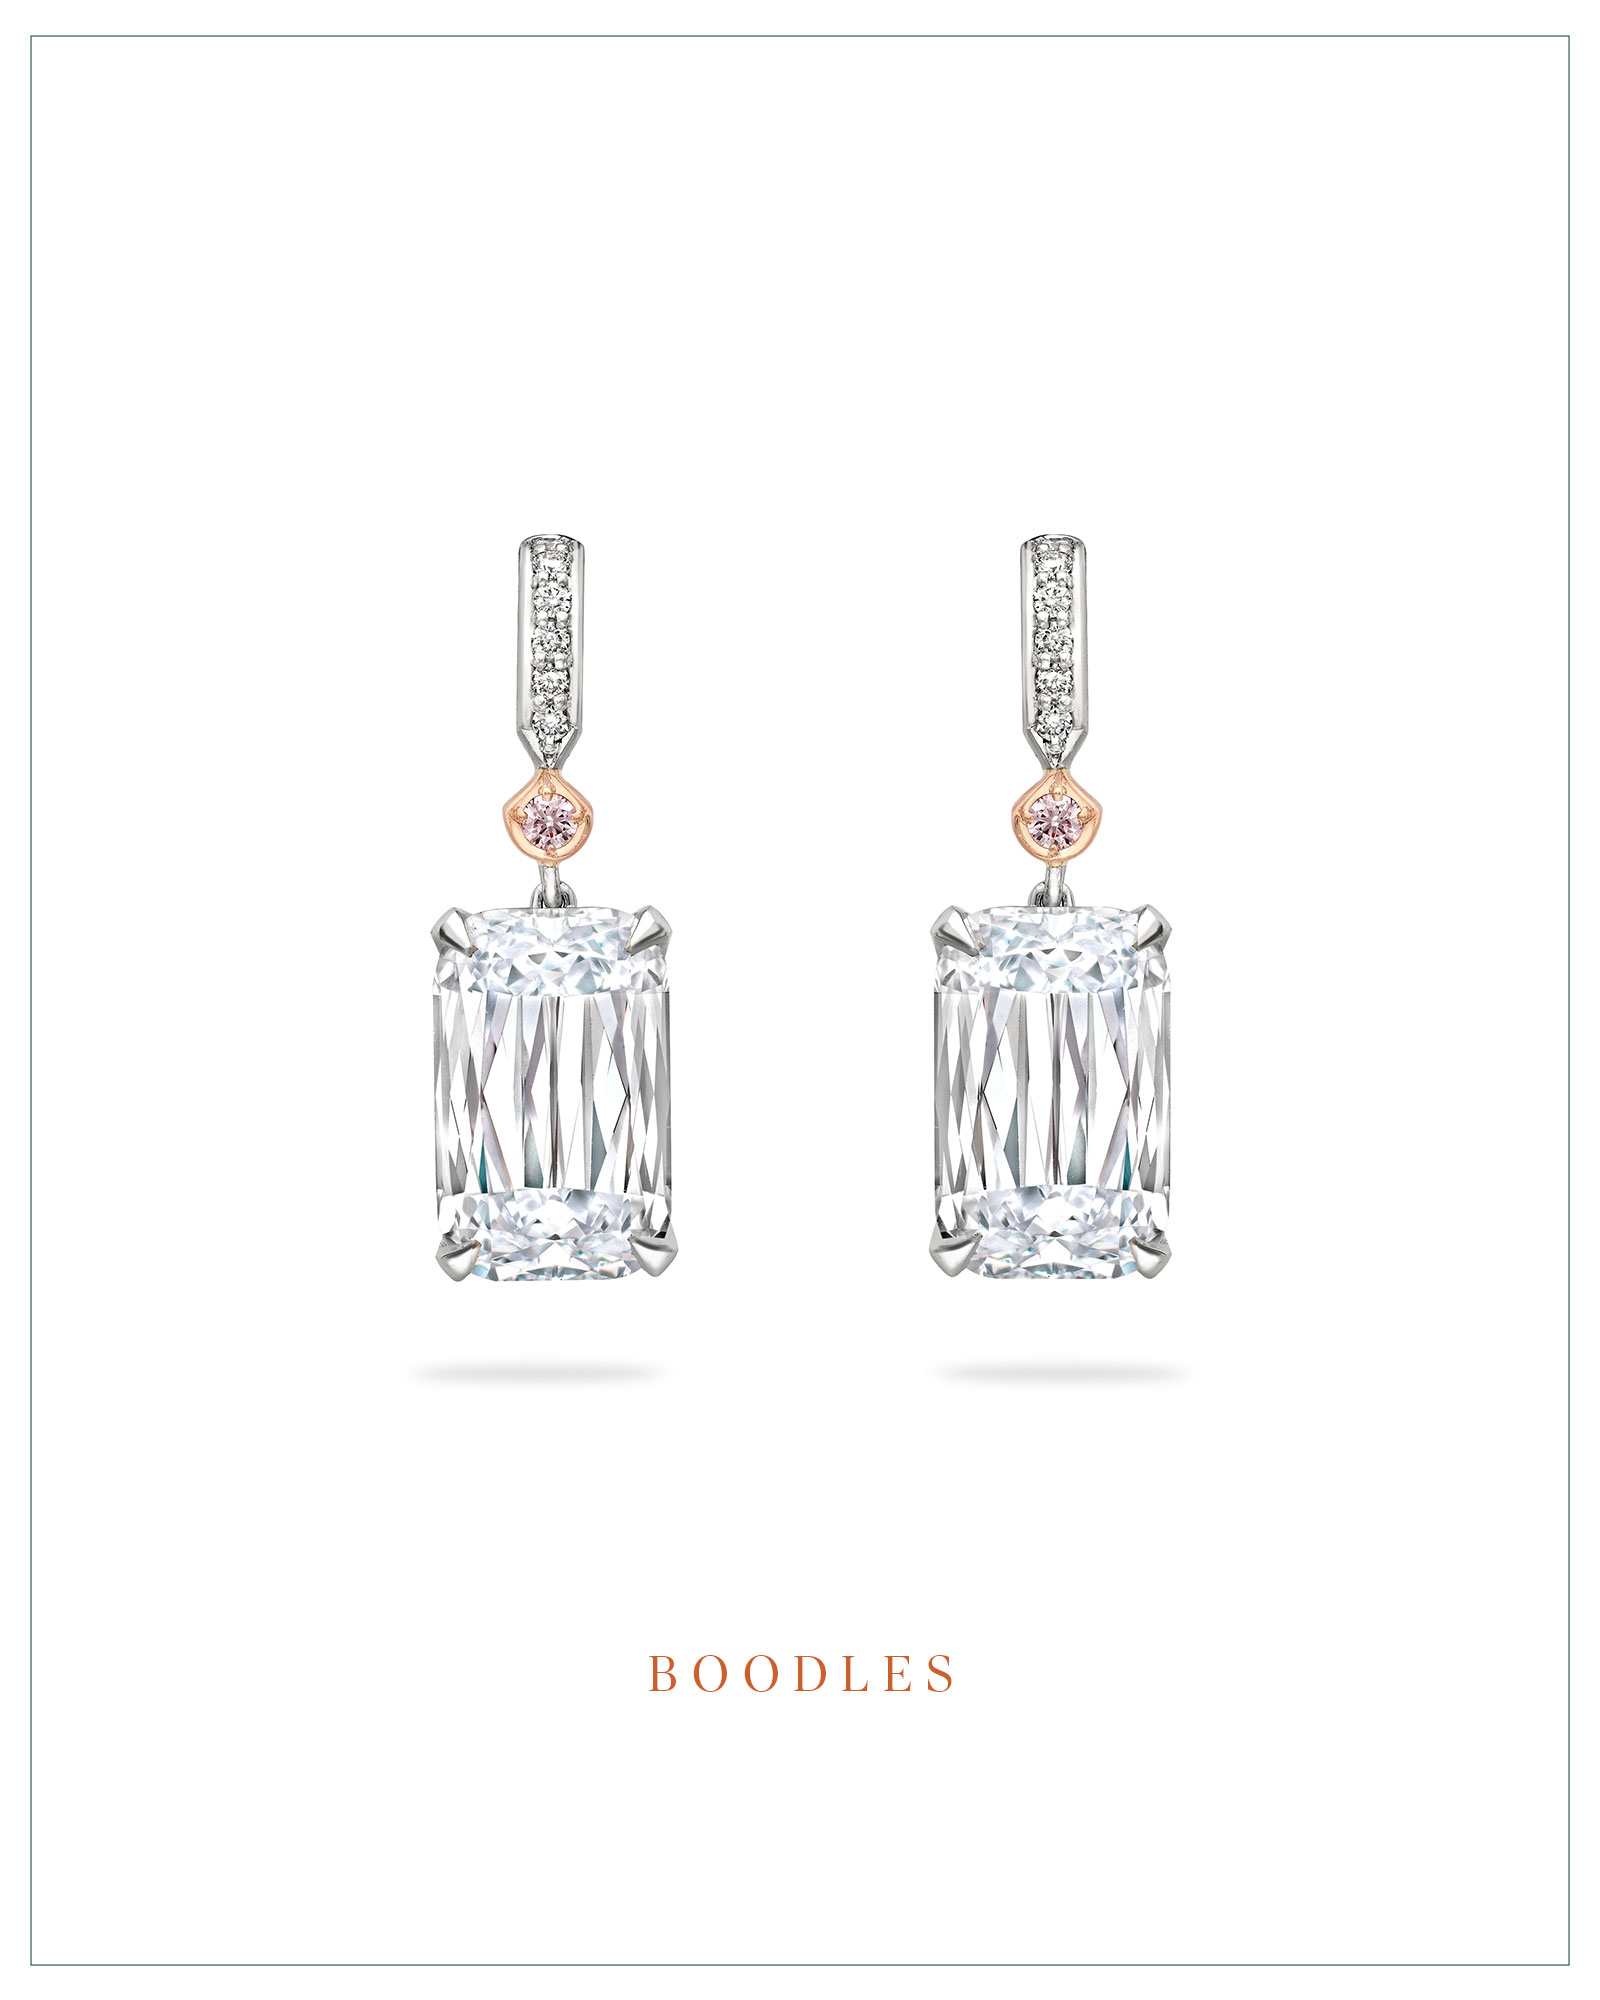 Boodles Ashoka-cut diamond earrings